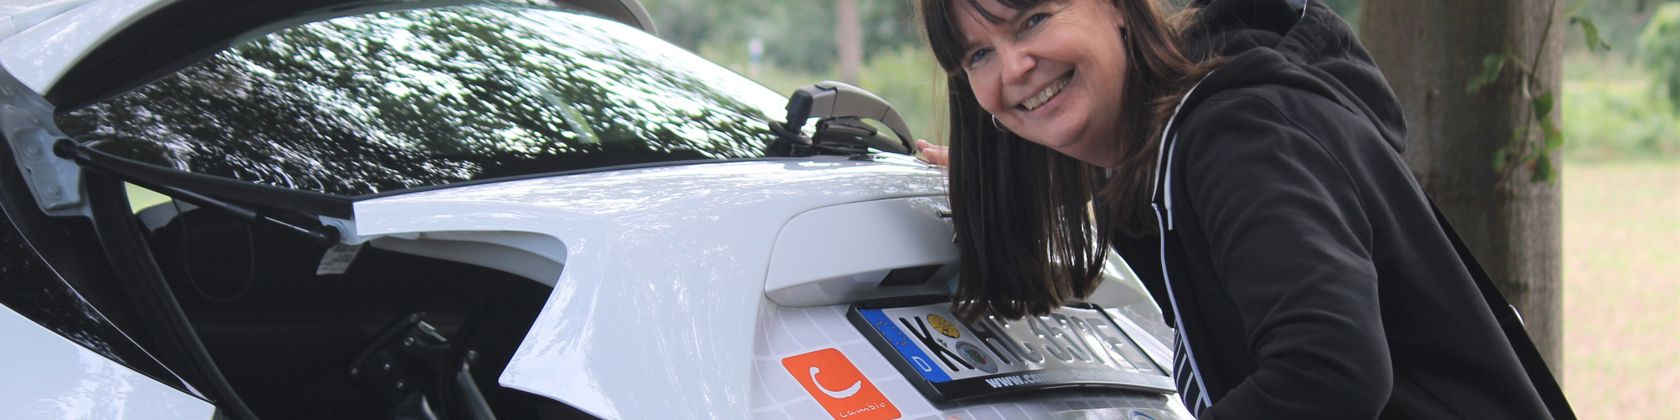 Frau schließt den Kofferraum eines Car-Sharing-Fahrzeugs